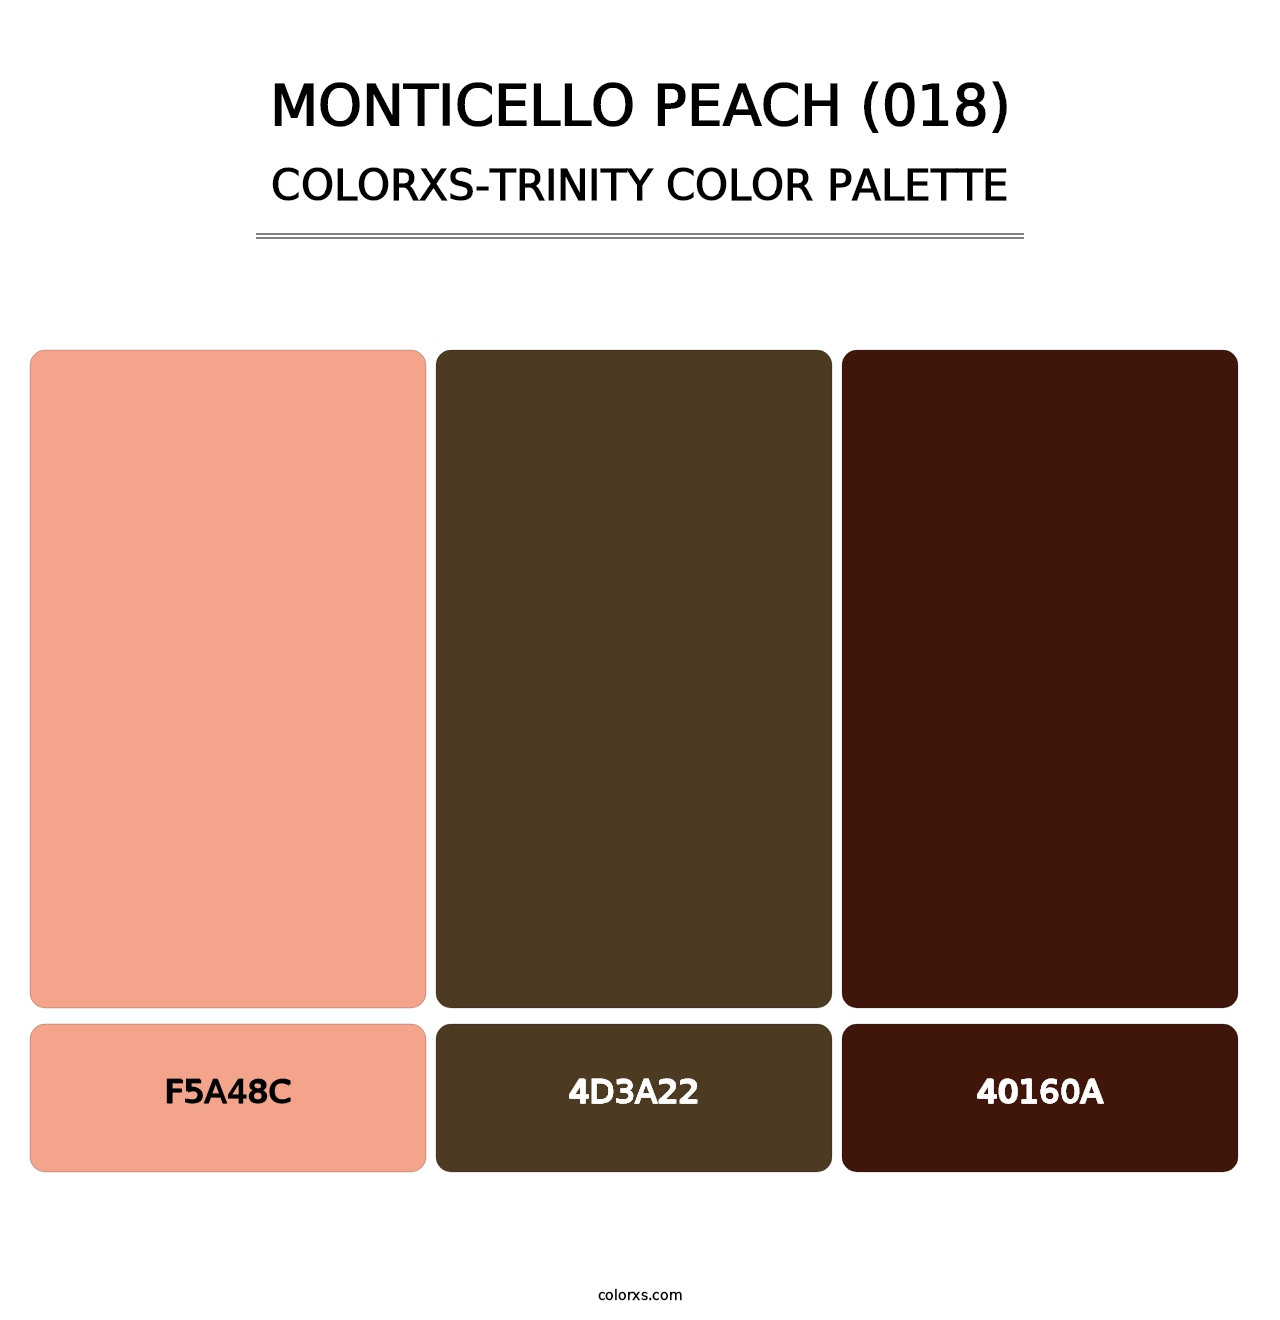 Monticello Peach (018) - Colorxs Trinity Palette